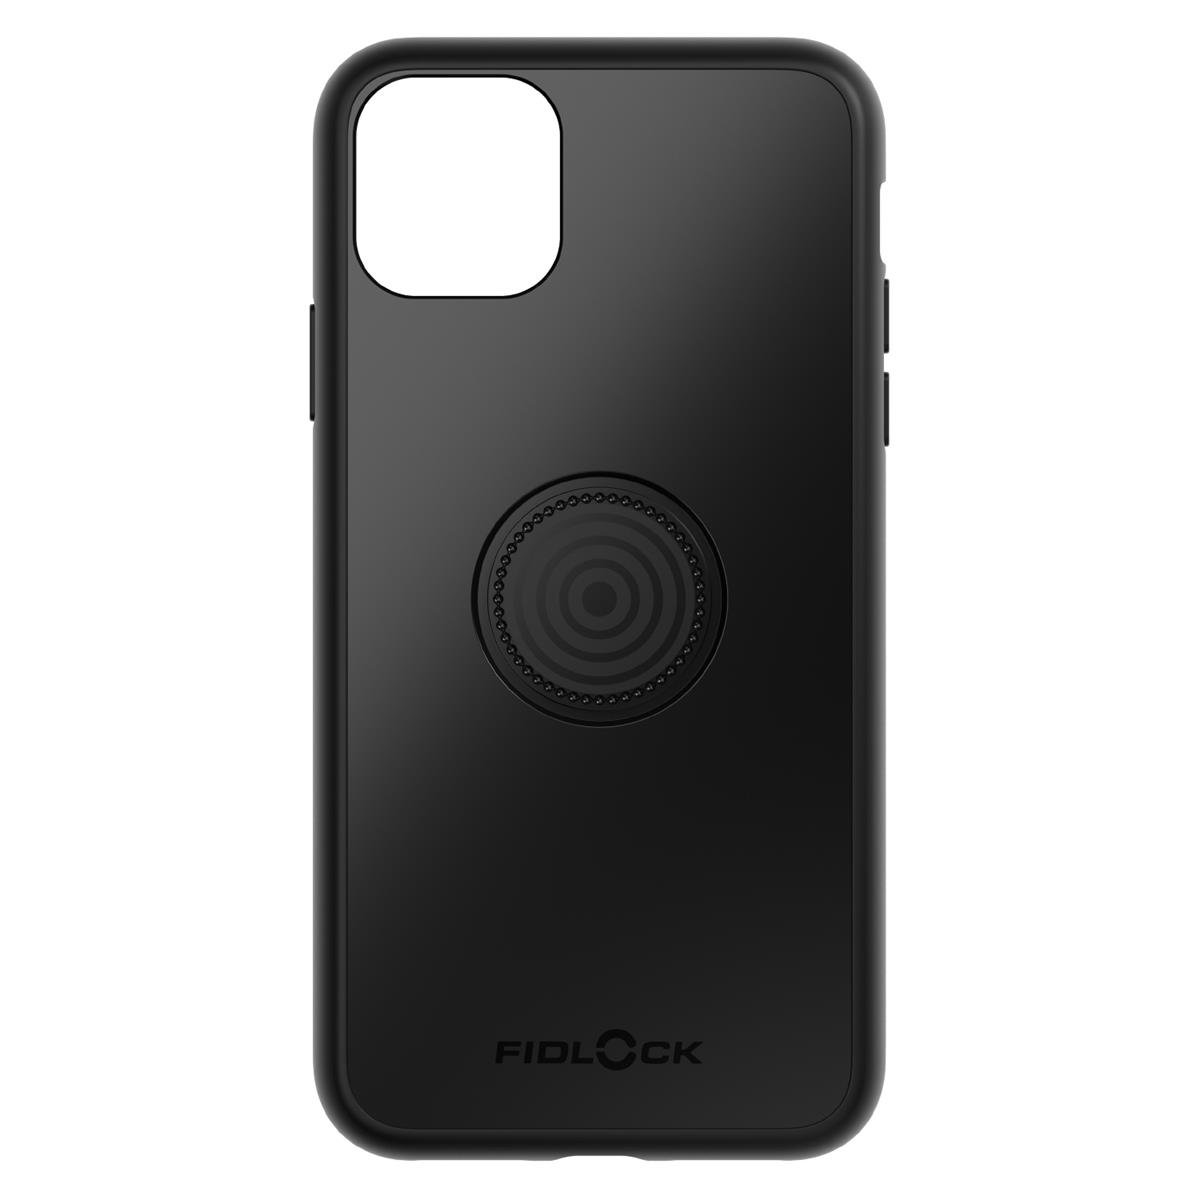 Fidlock Smartphone Case Vacuum iPhone 11 Pro Max